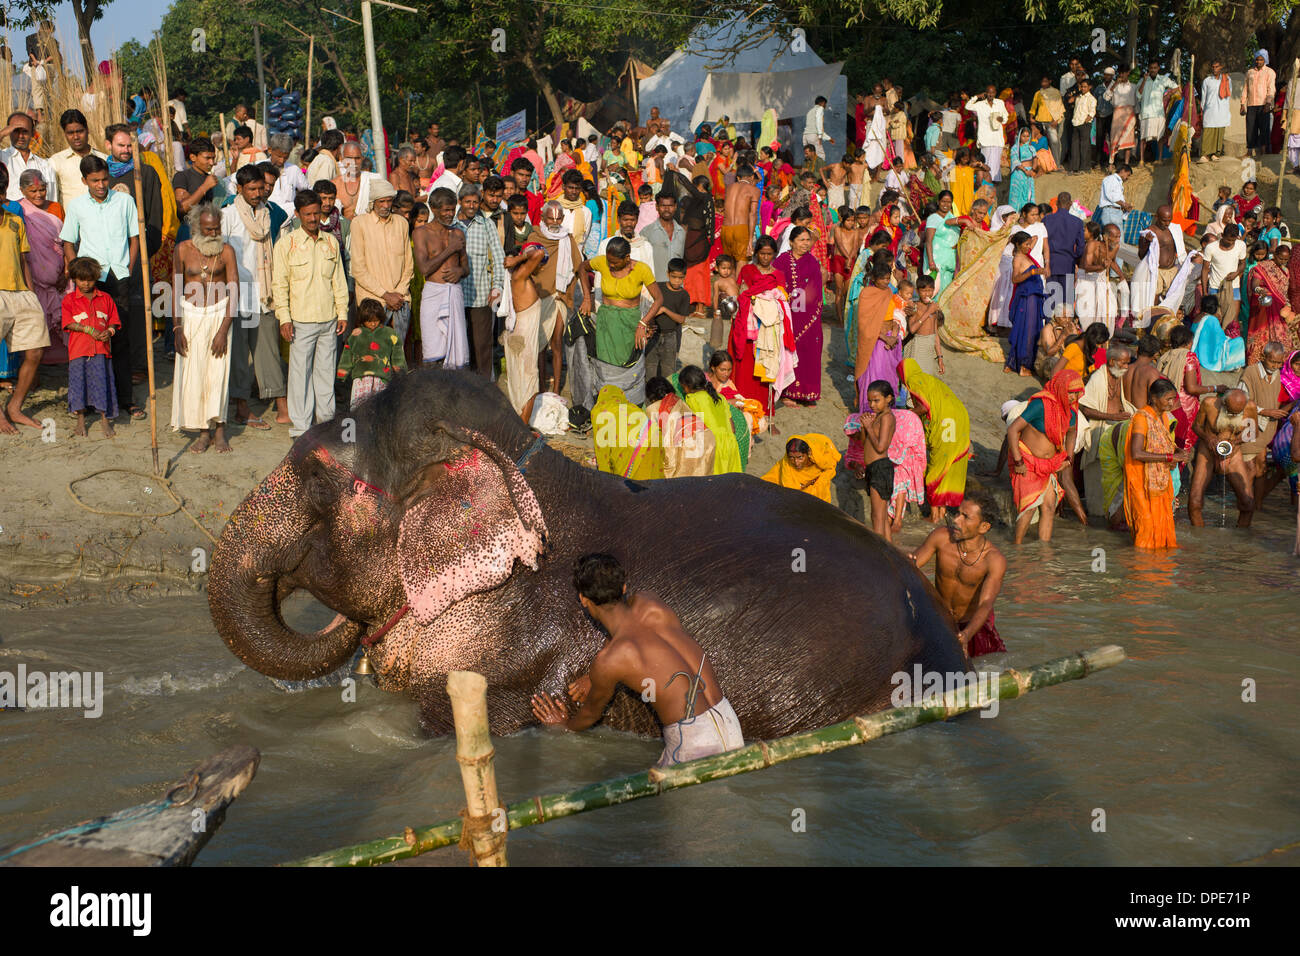 Mahouts Baden ein Elefant in den Fluß Gandak, mit den Pilgern, die gerade von der Bank Sonepur Mela, Sonepur, Bihar, Indien Stockfoto